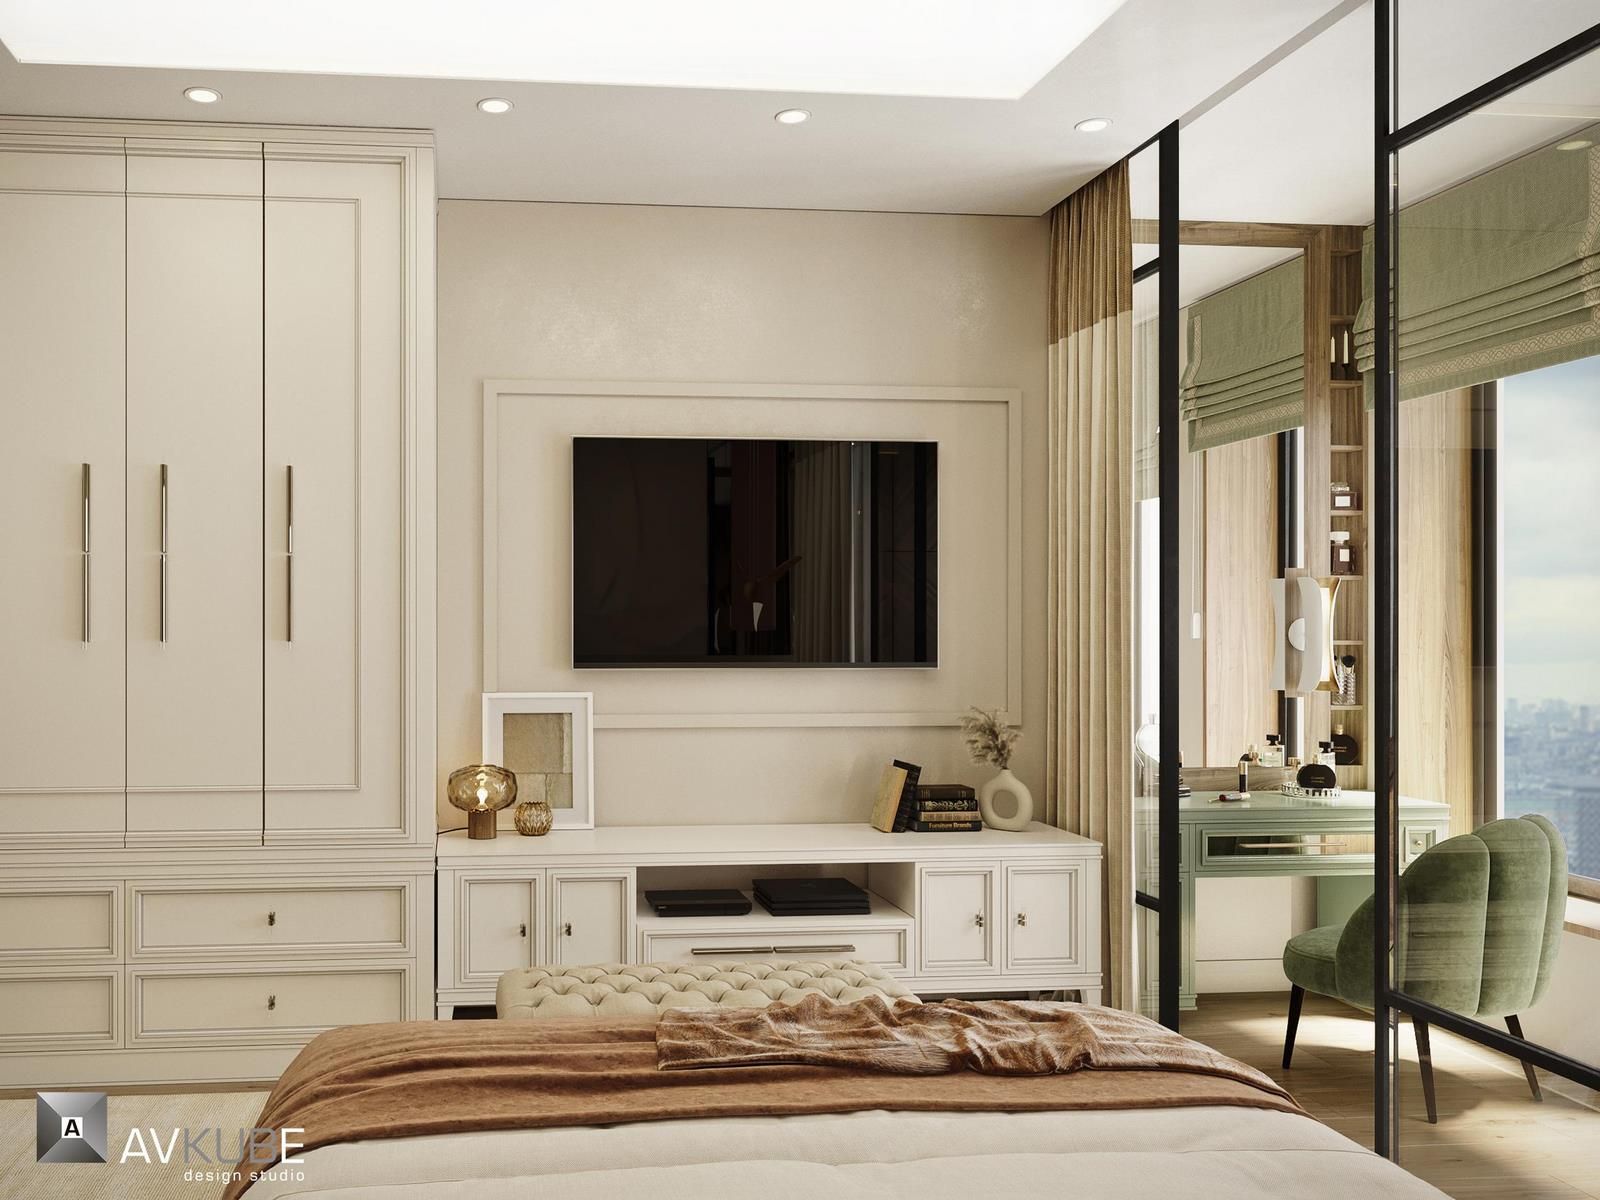 На фото – спальня в стиле прованс с рабочей зоной, дизайн проект «АвКубе»